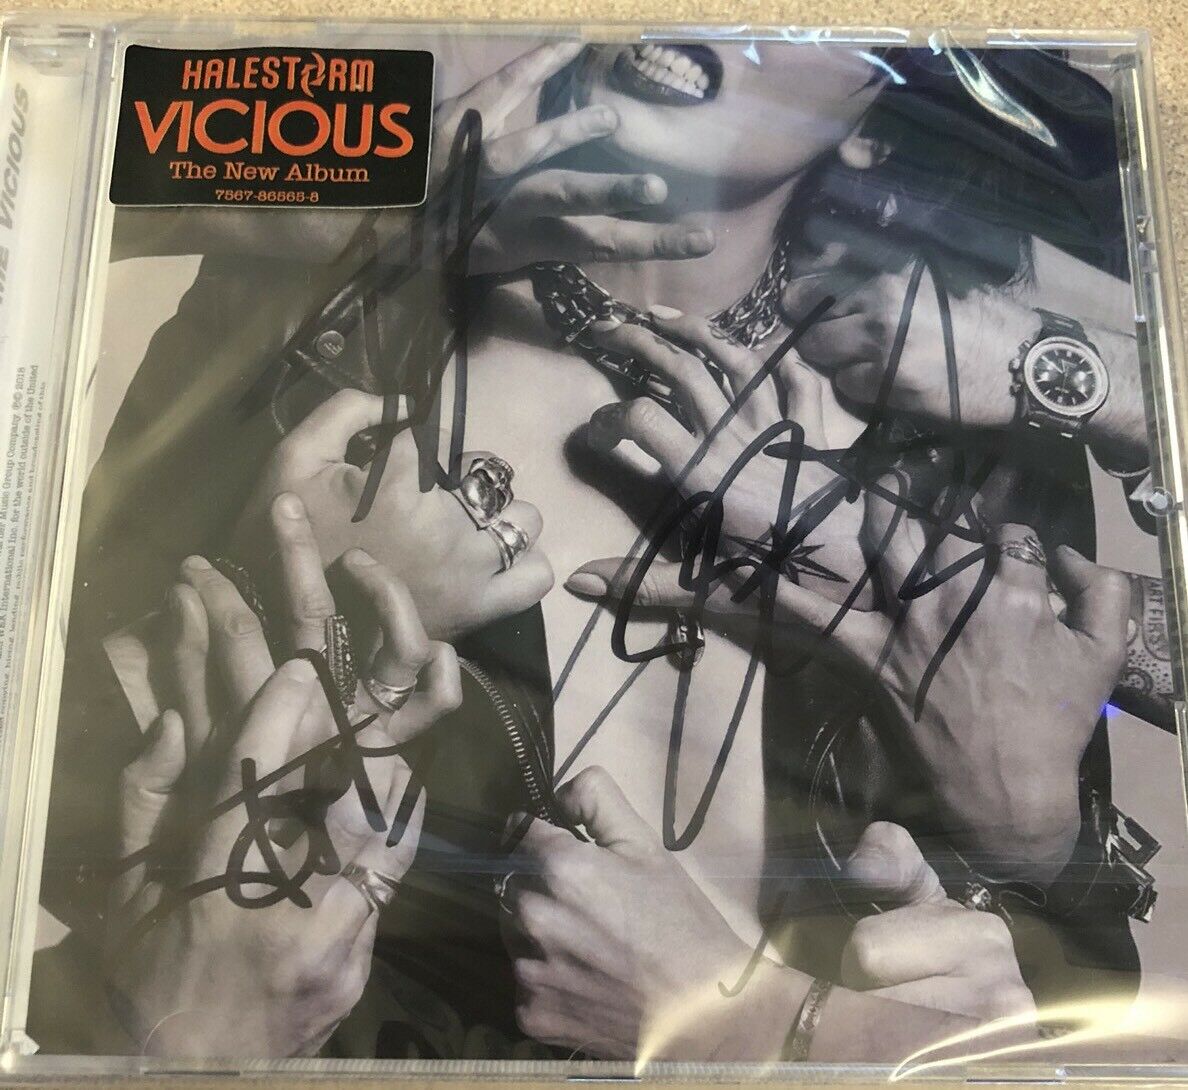 Halestorm Vicious Autographed CD